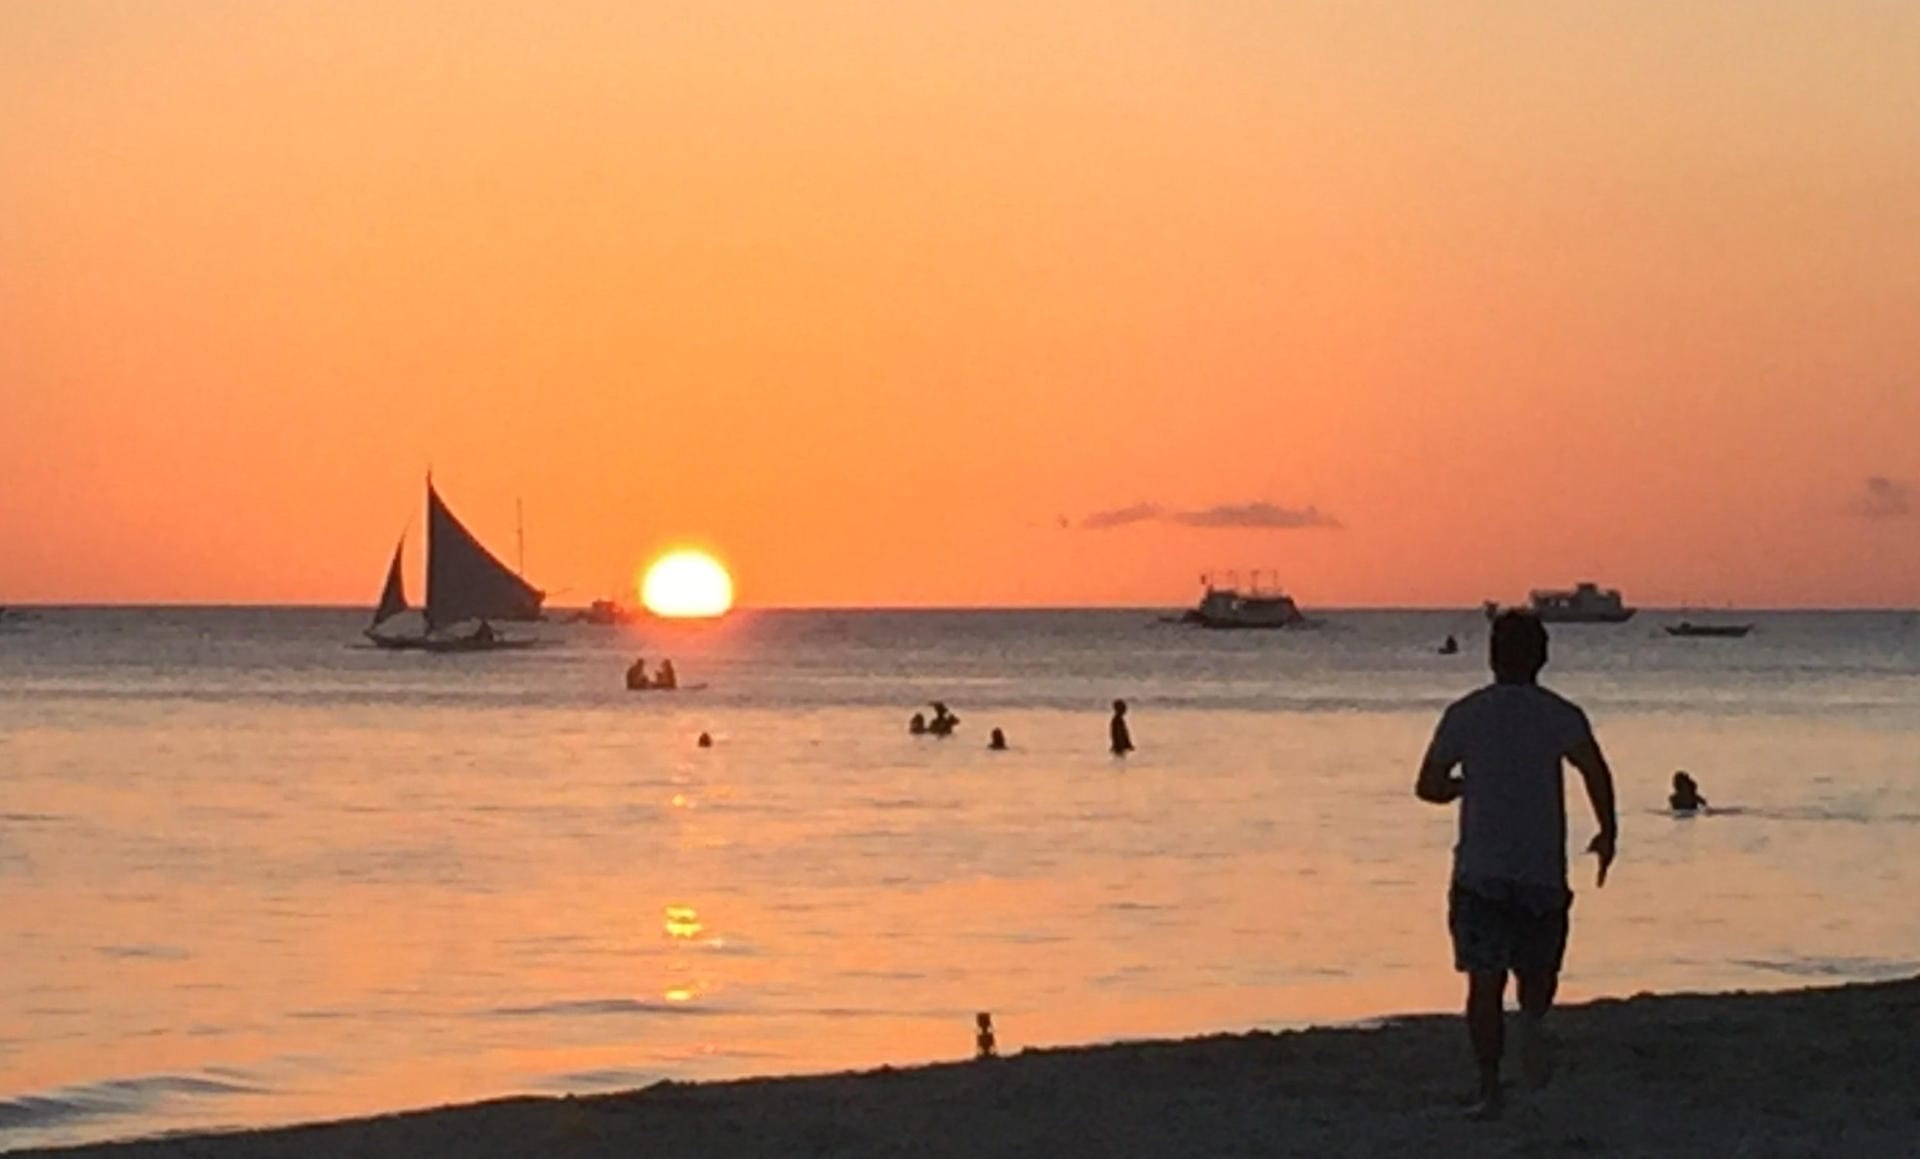 Insel Boracay: Spaziergänger gehen am Strand spazieren und betrachten den Sonnenuntergang.